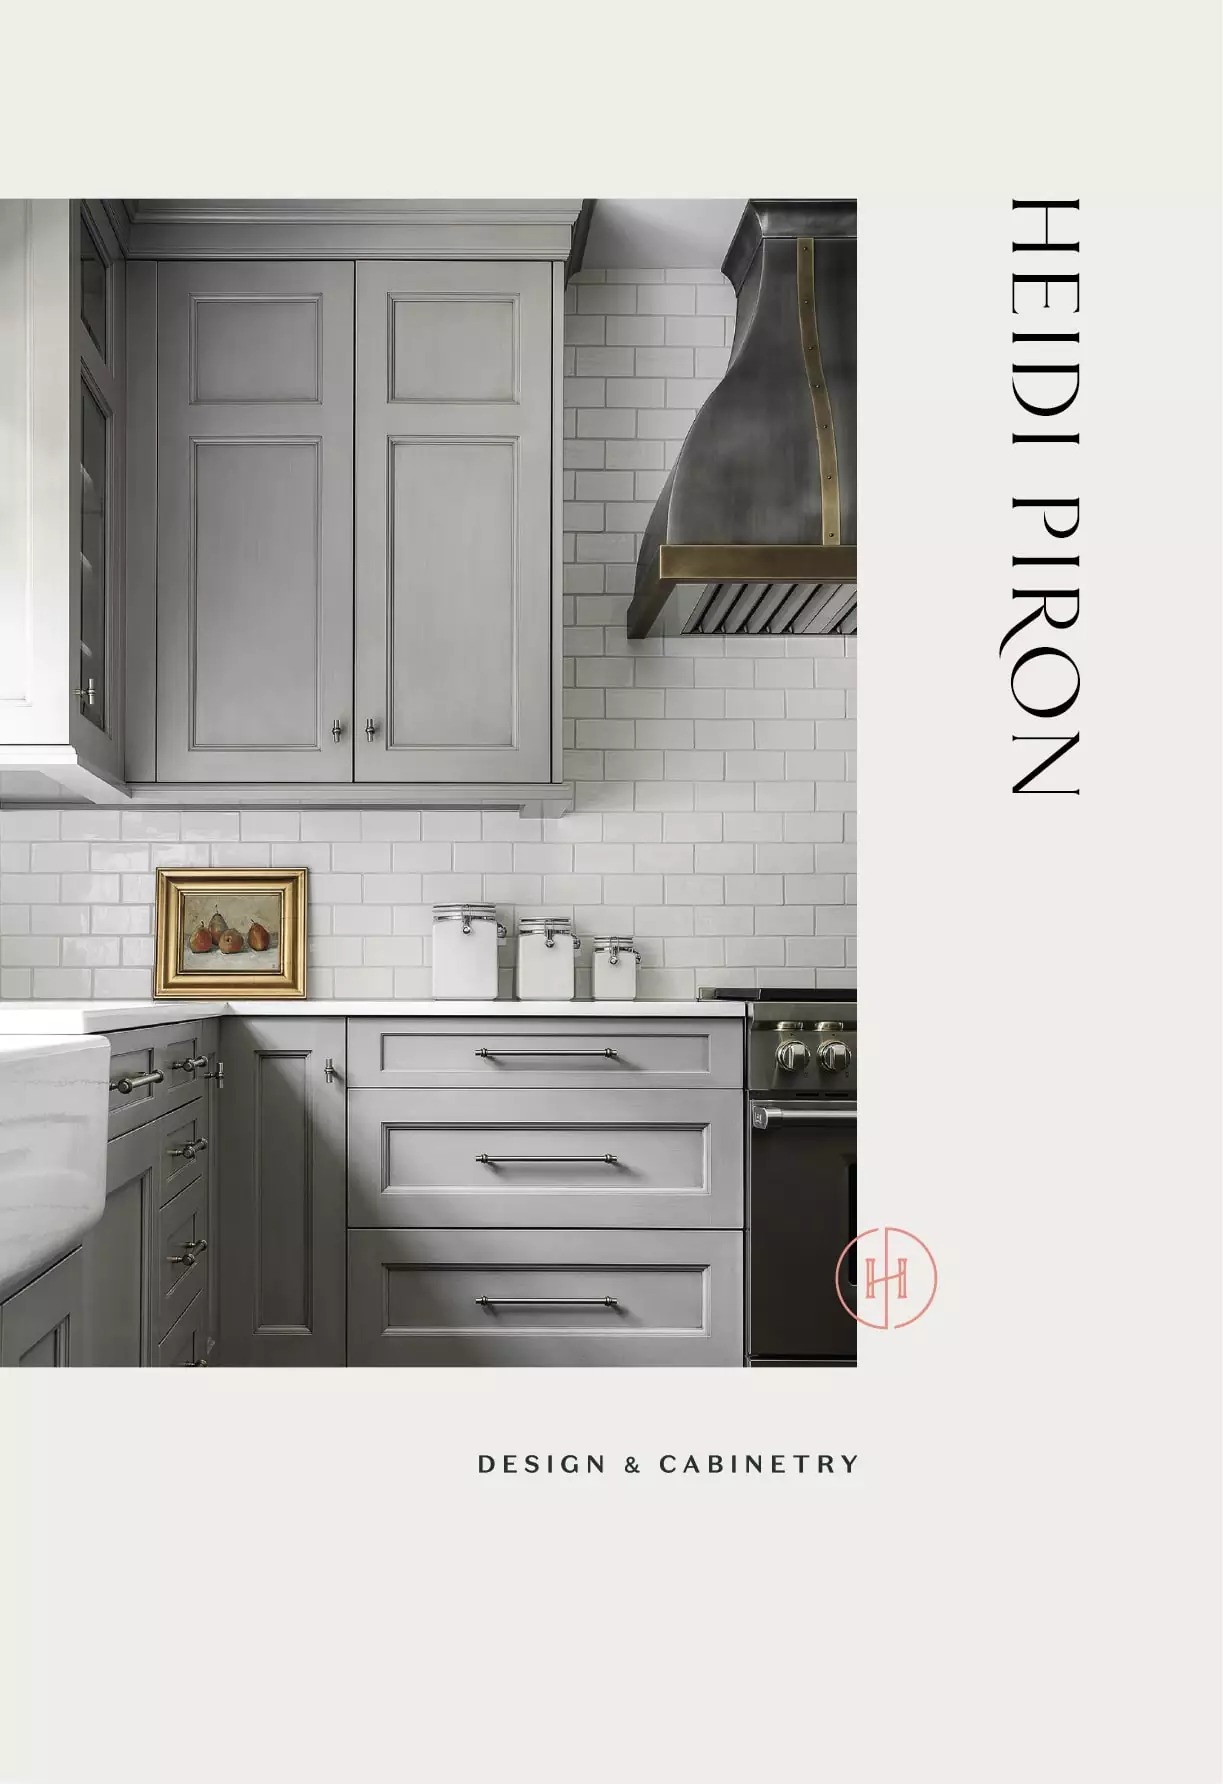 厨房设计和空间定制品牌Heidi Piron视觉形象设计